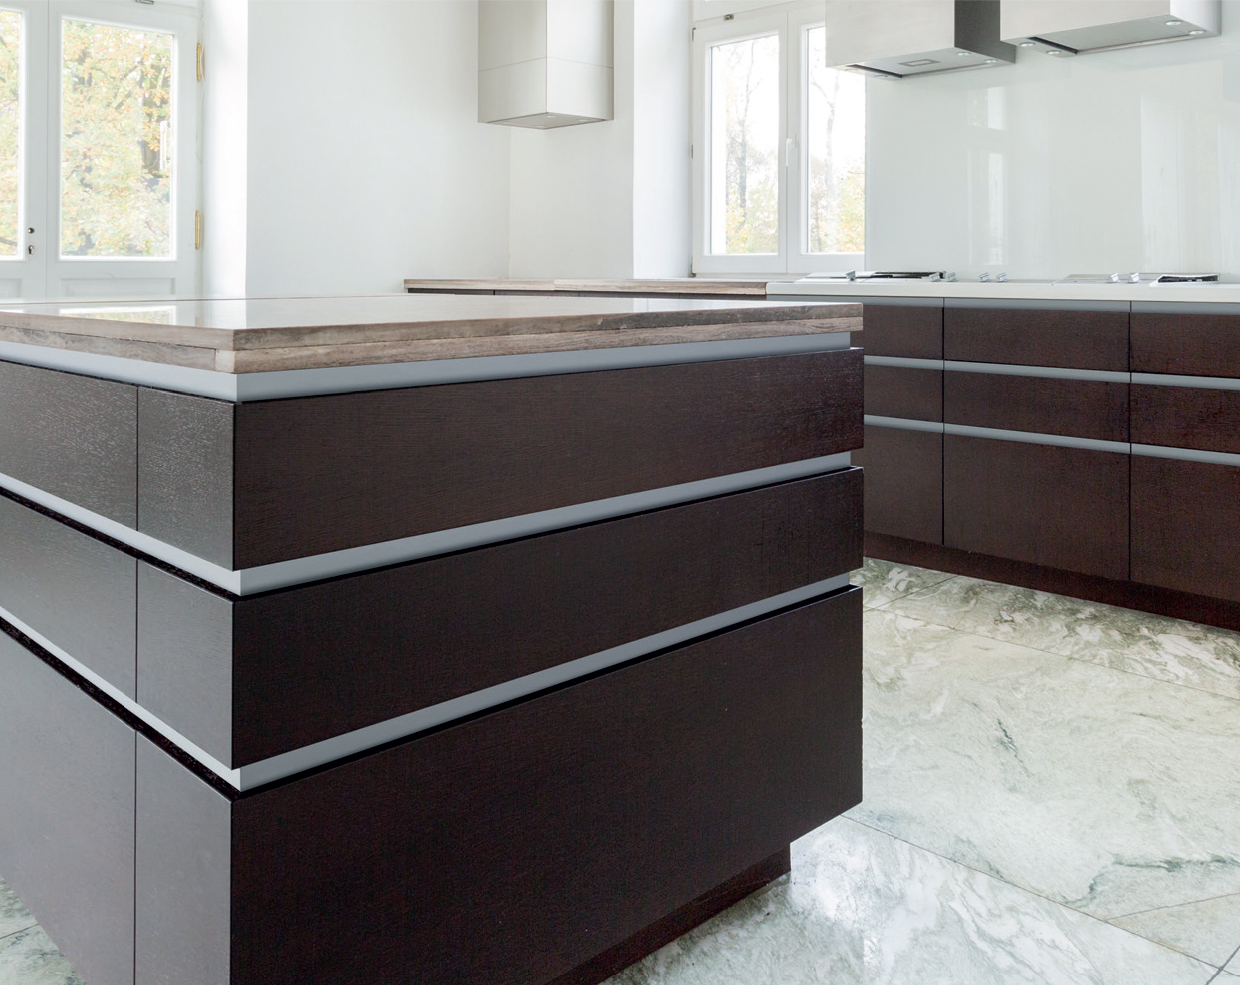 Schwinn Handle-Free Cabinet Hardware installed in a modern kitchen.